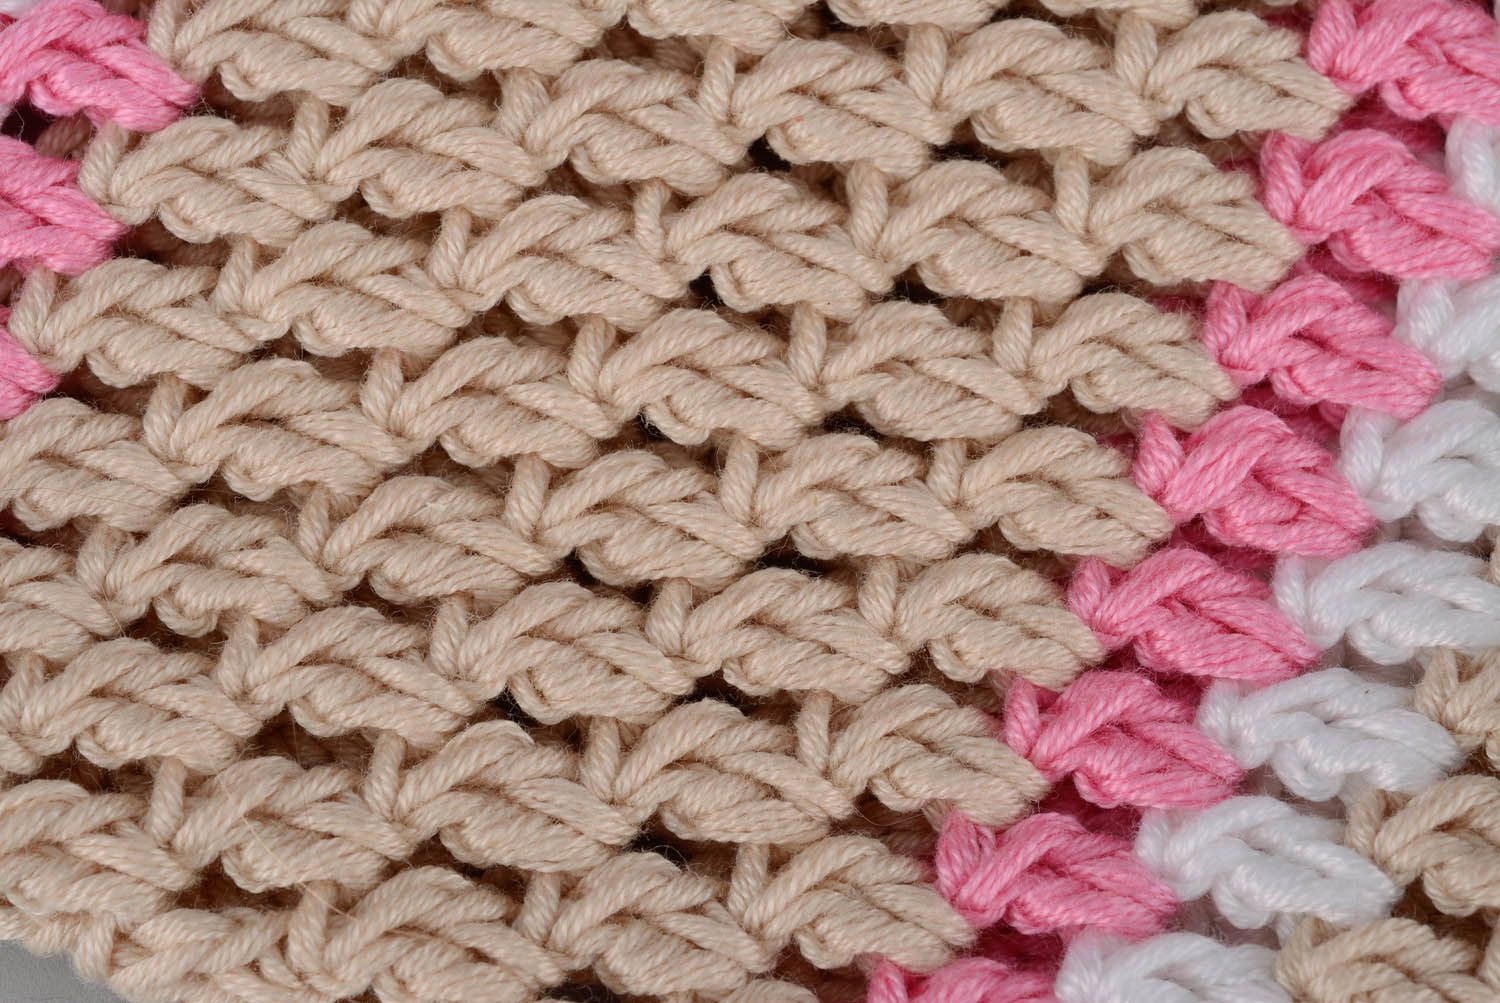 Sac beige rose tricoté pour petite fille photo 5